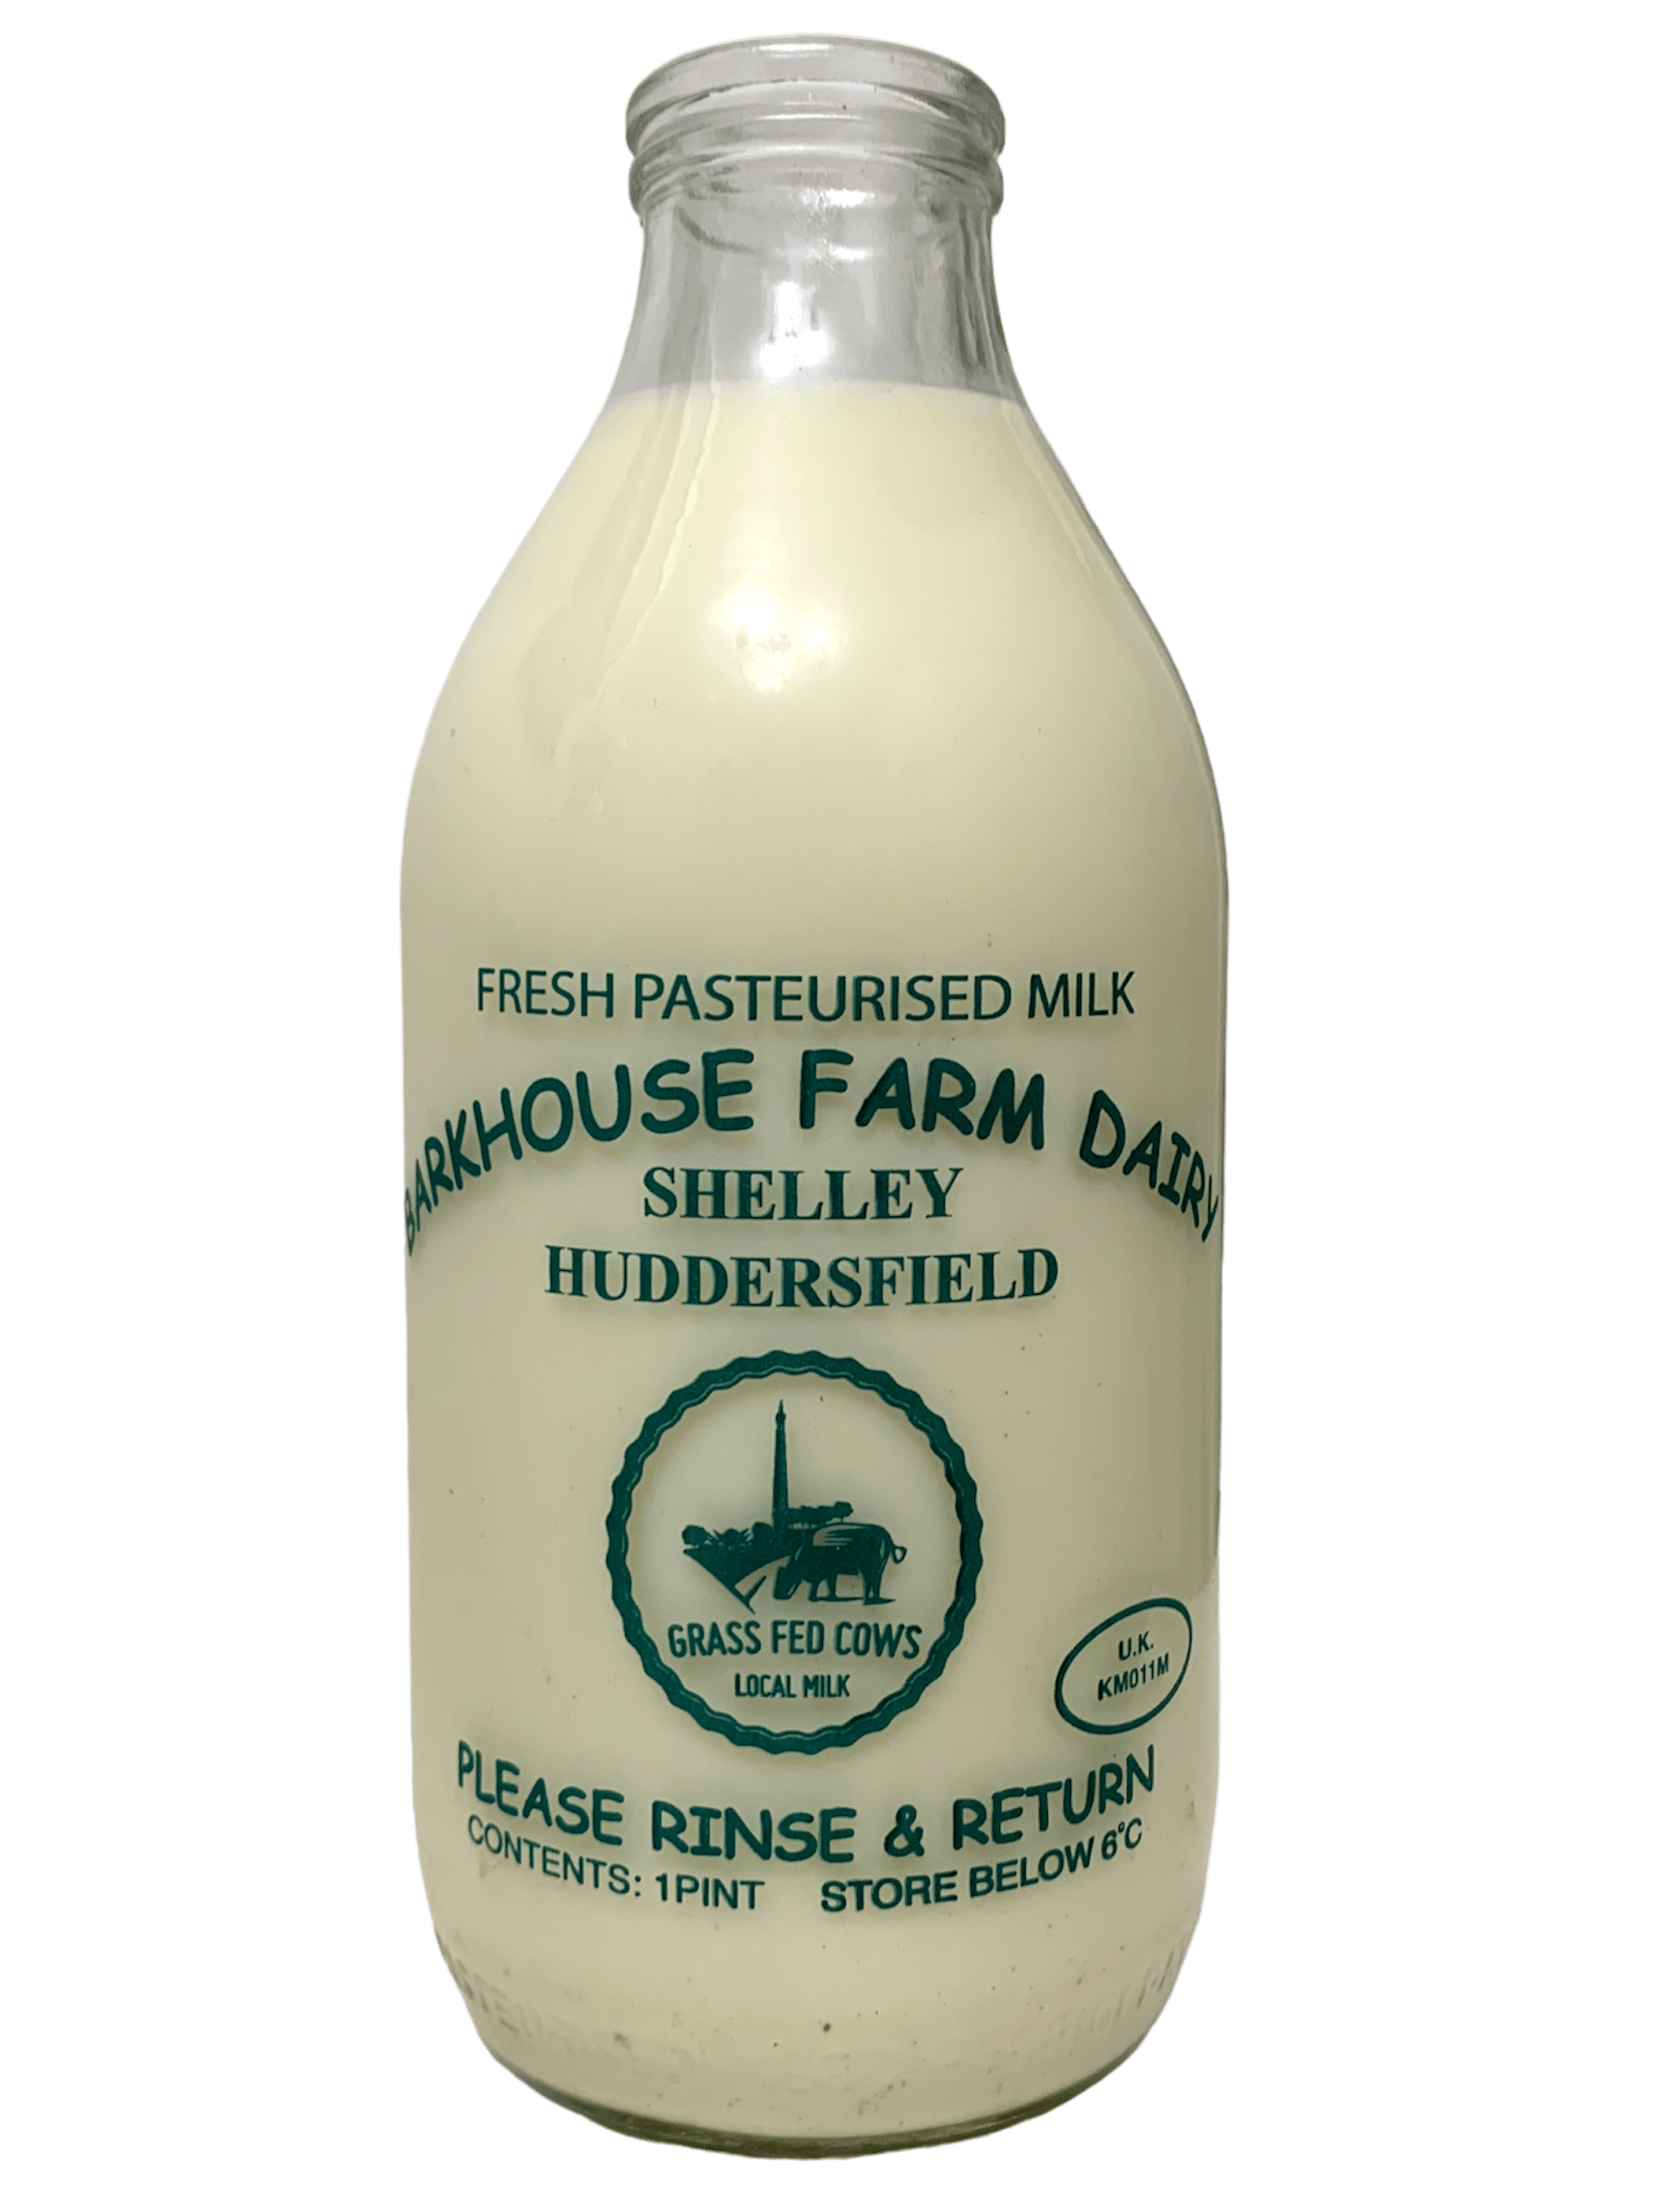 Bark House Farm Dairy - www.Kelis.info #KelisTheBottleBank